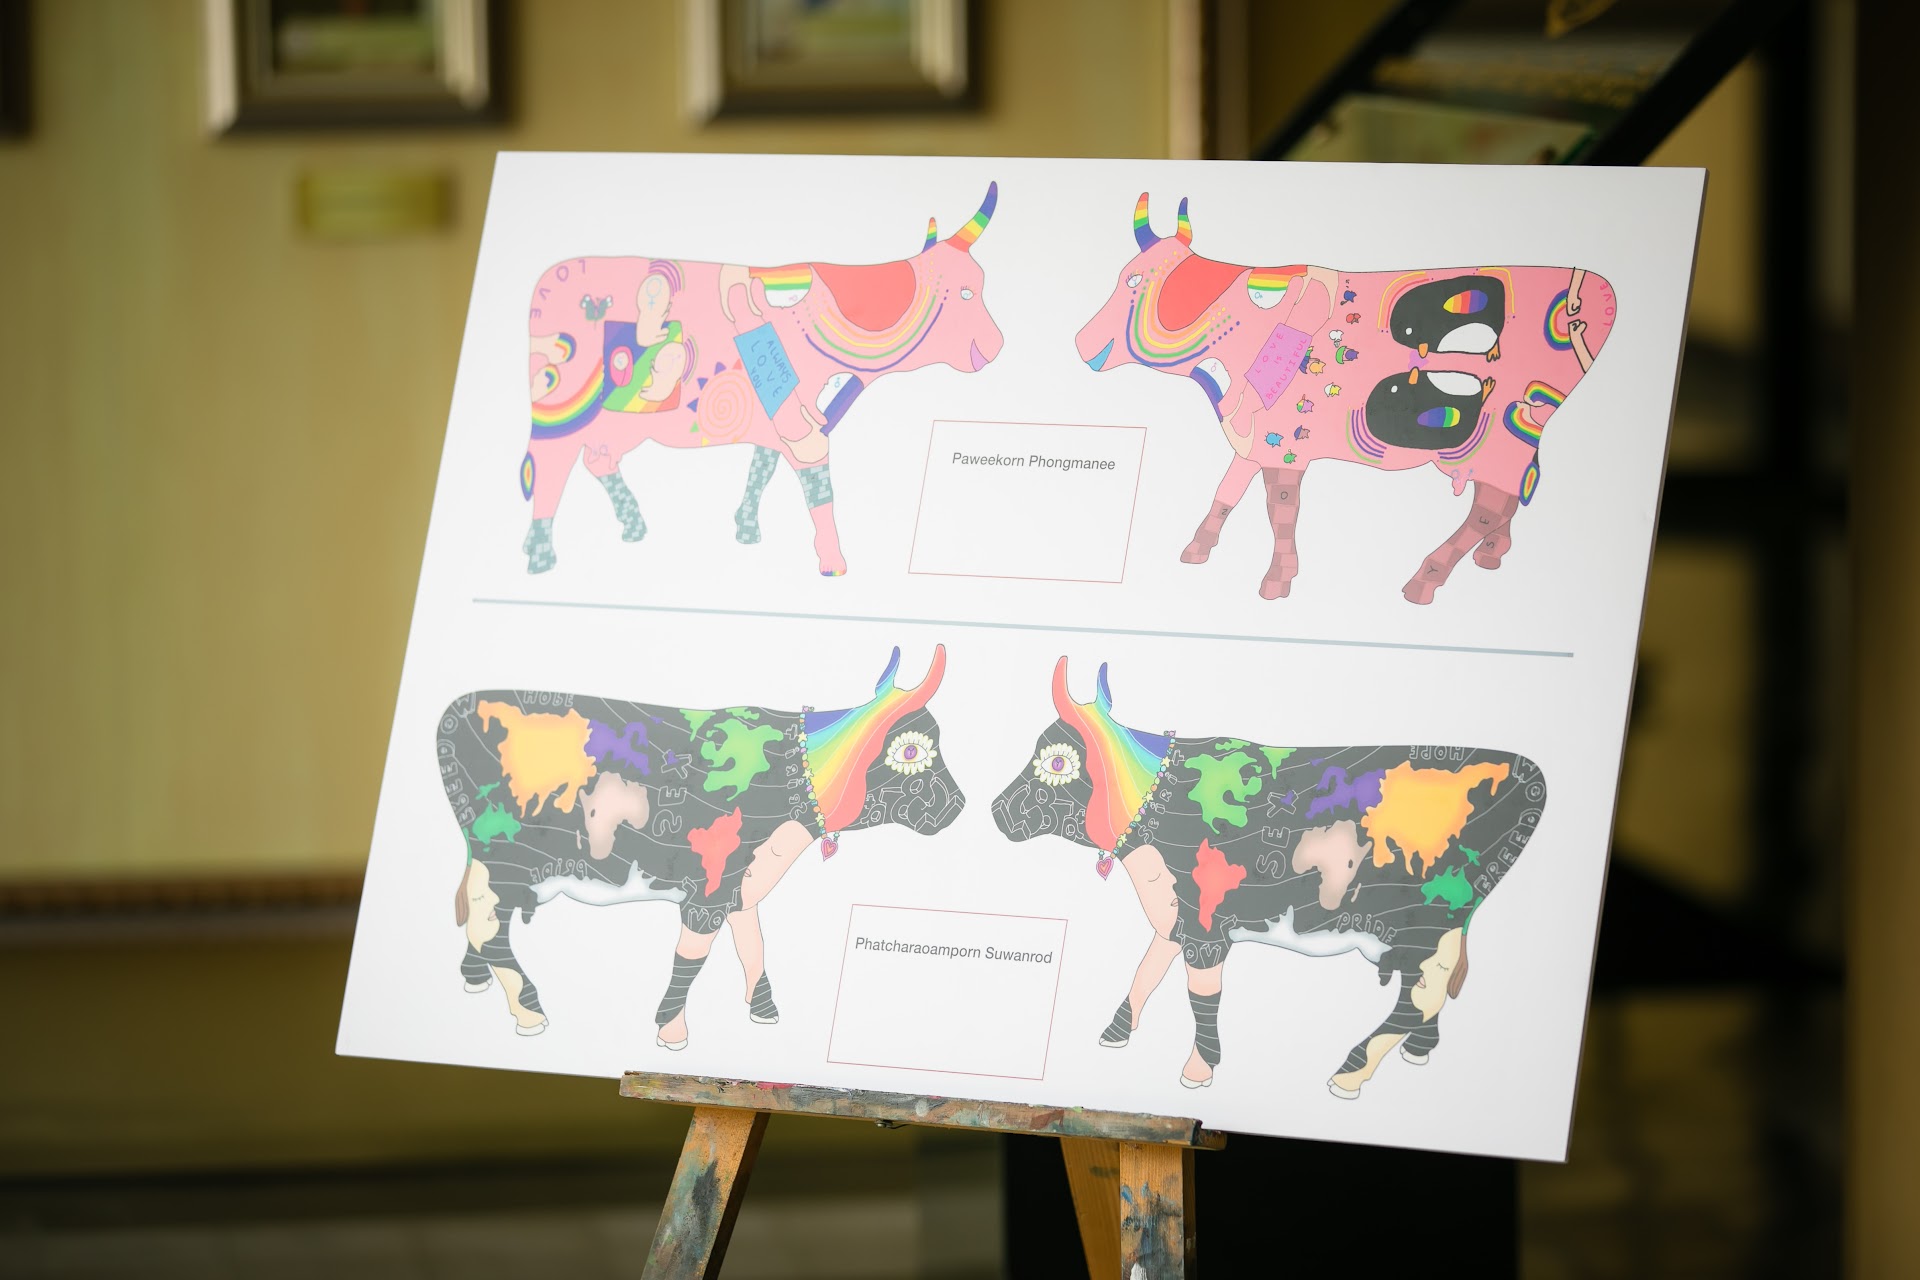 พิธีมอบรางวัลแก่นิสิตจากการประกวดออกแบบเขียนสีลวดลายบนรูปปั้นวัว